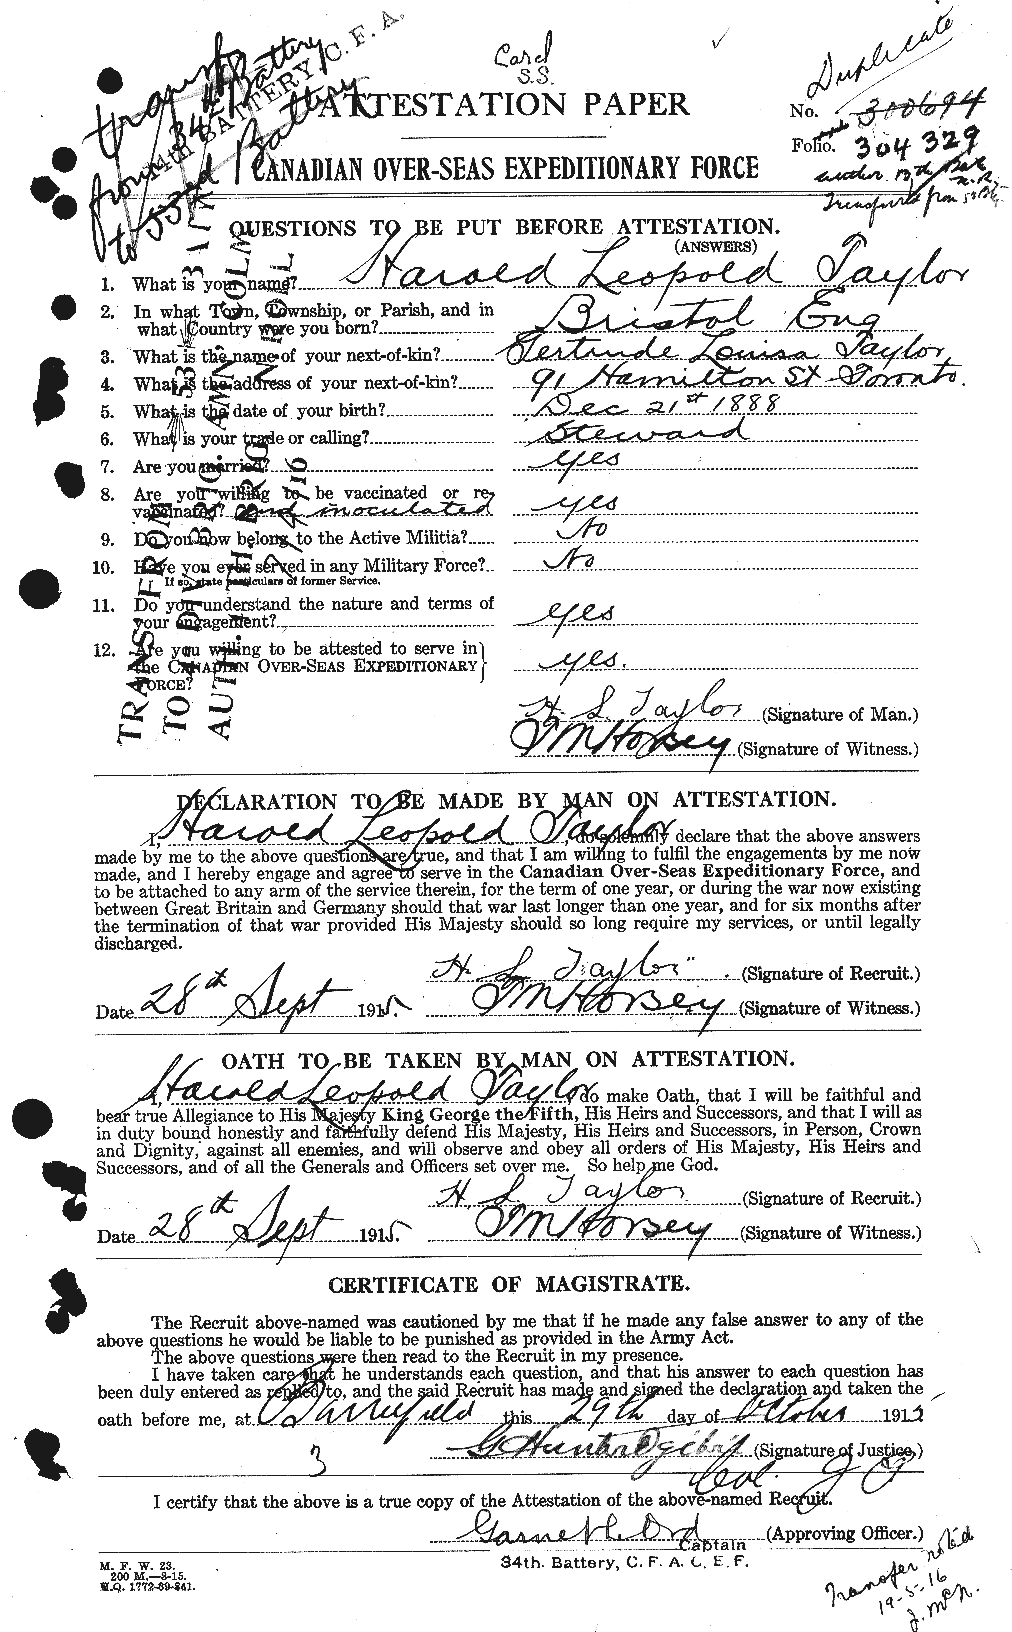 Dossiers du Personnel de la Première Guerre mondiale - CEC 626427a